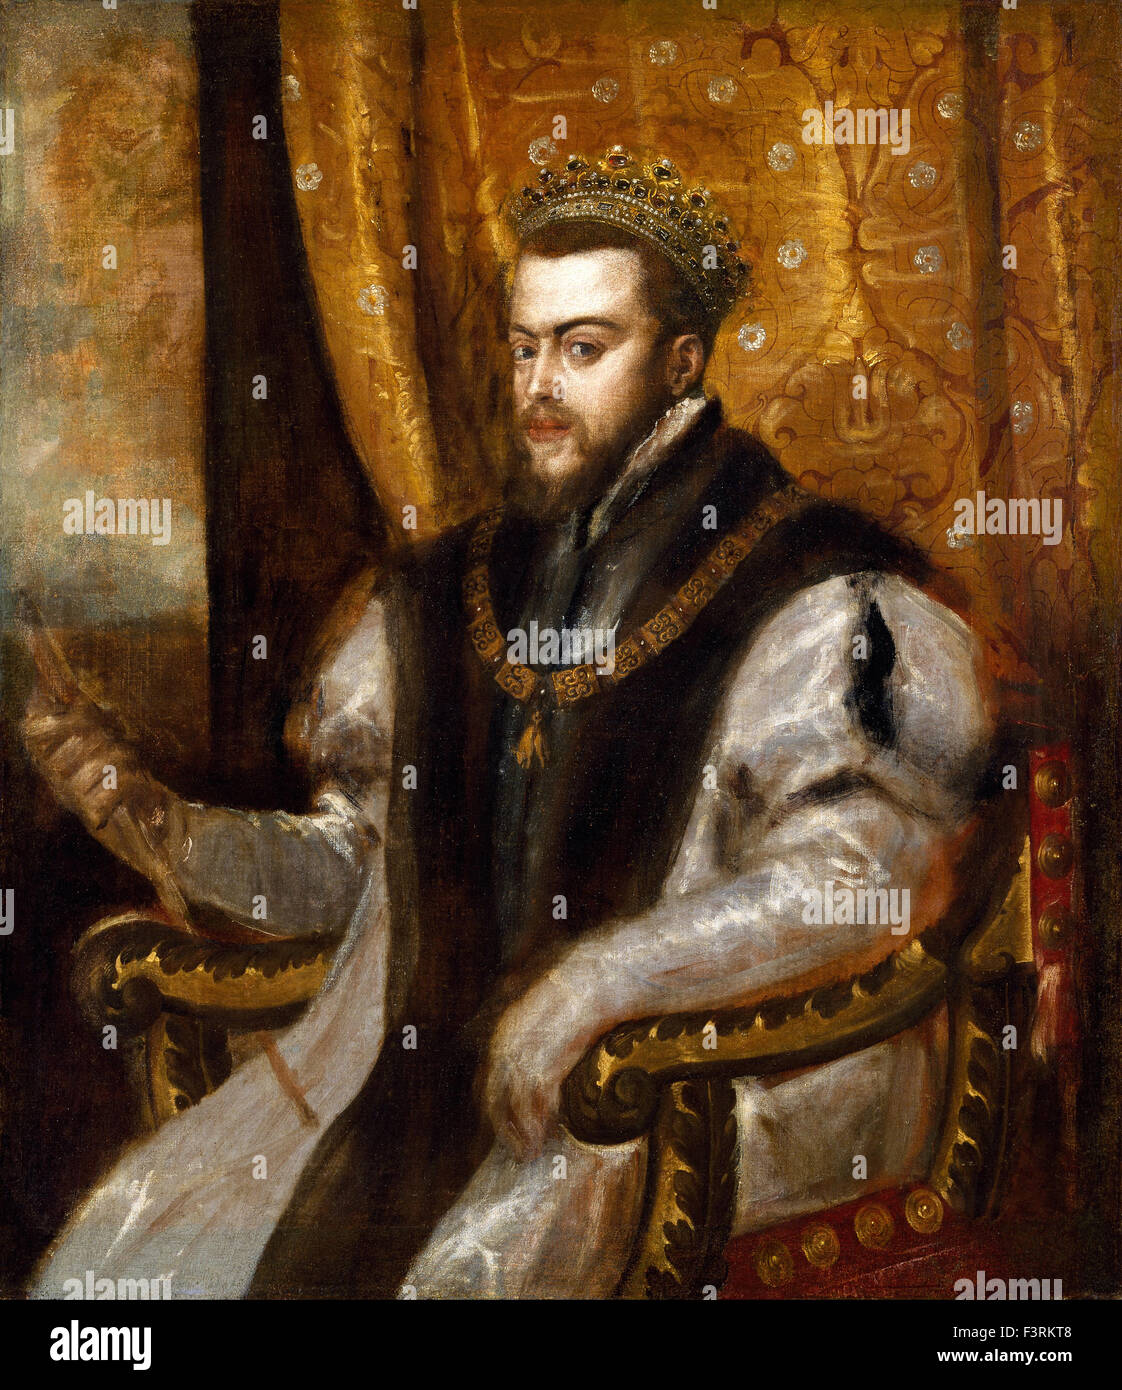 Tiziano Vecellio - Titian - Portrait of Philip II Stock Photo